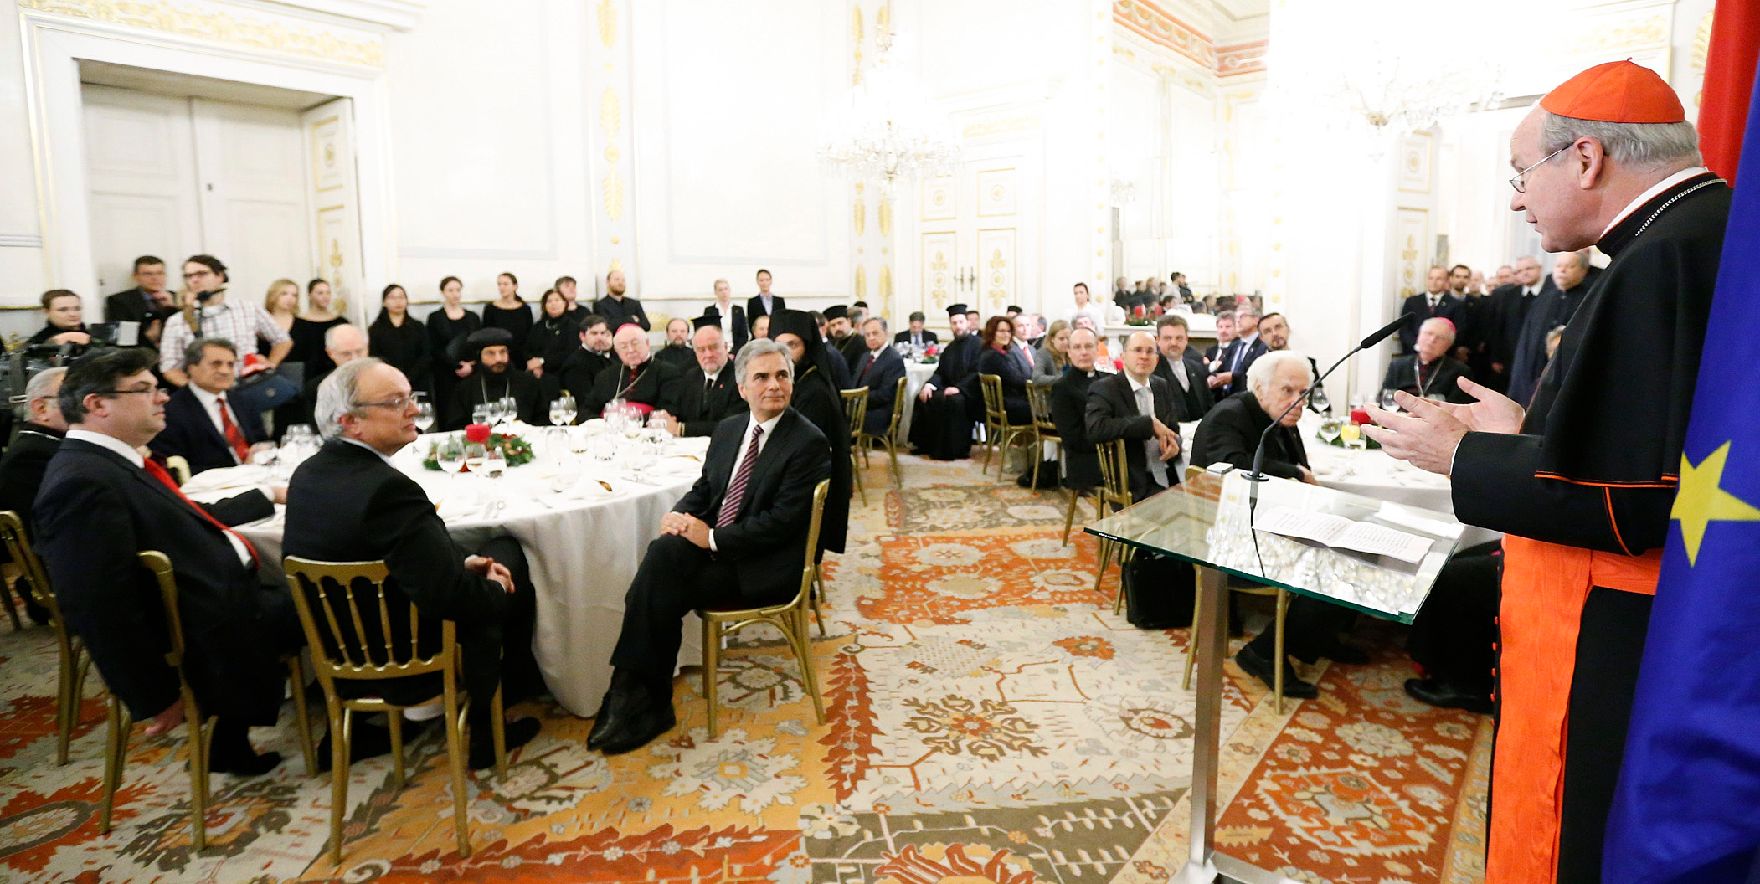 Am 11. Dezember 2012 lud Bundeskanzler Werner Faymann religiöse Vertreter zu einem Adventempfang in das Bundeskanzleramt.